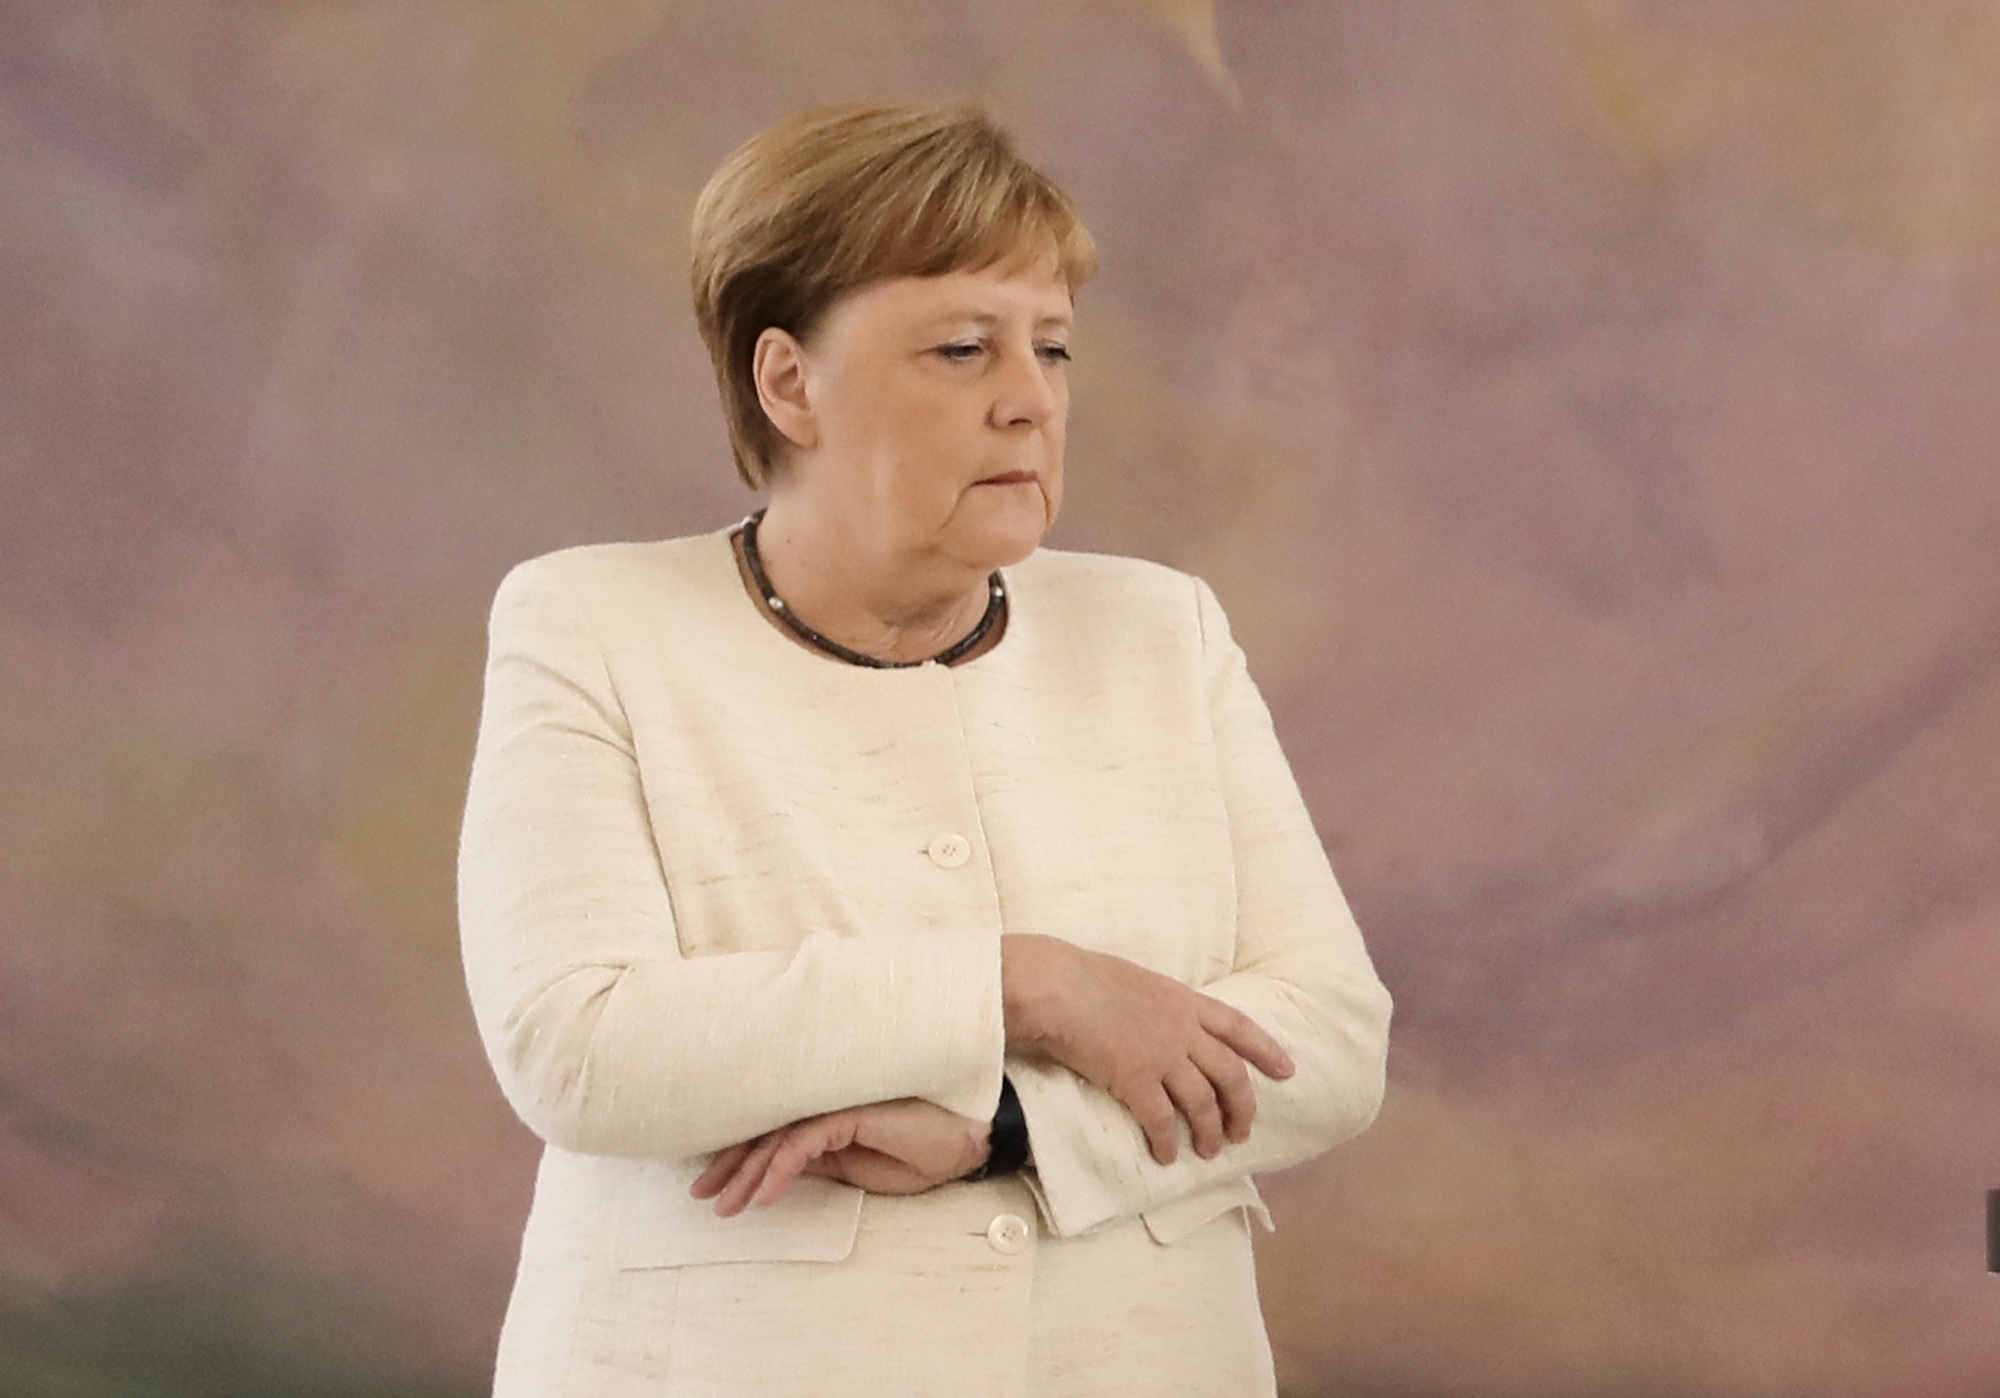 Angela Merkel vuelve a sufrir temblores durante una ceremonia oficial